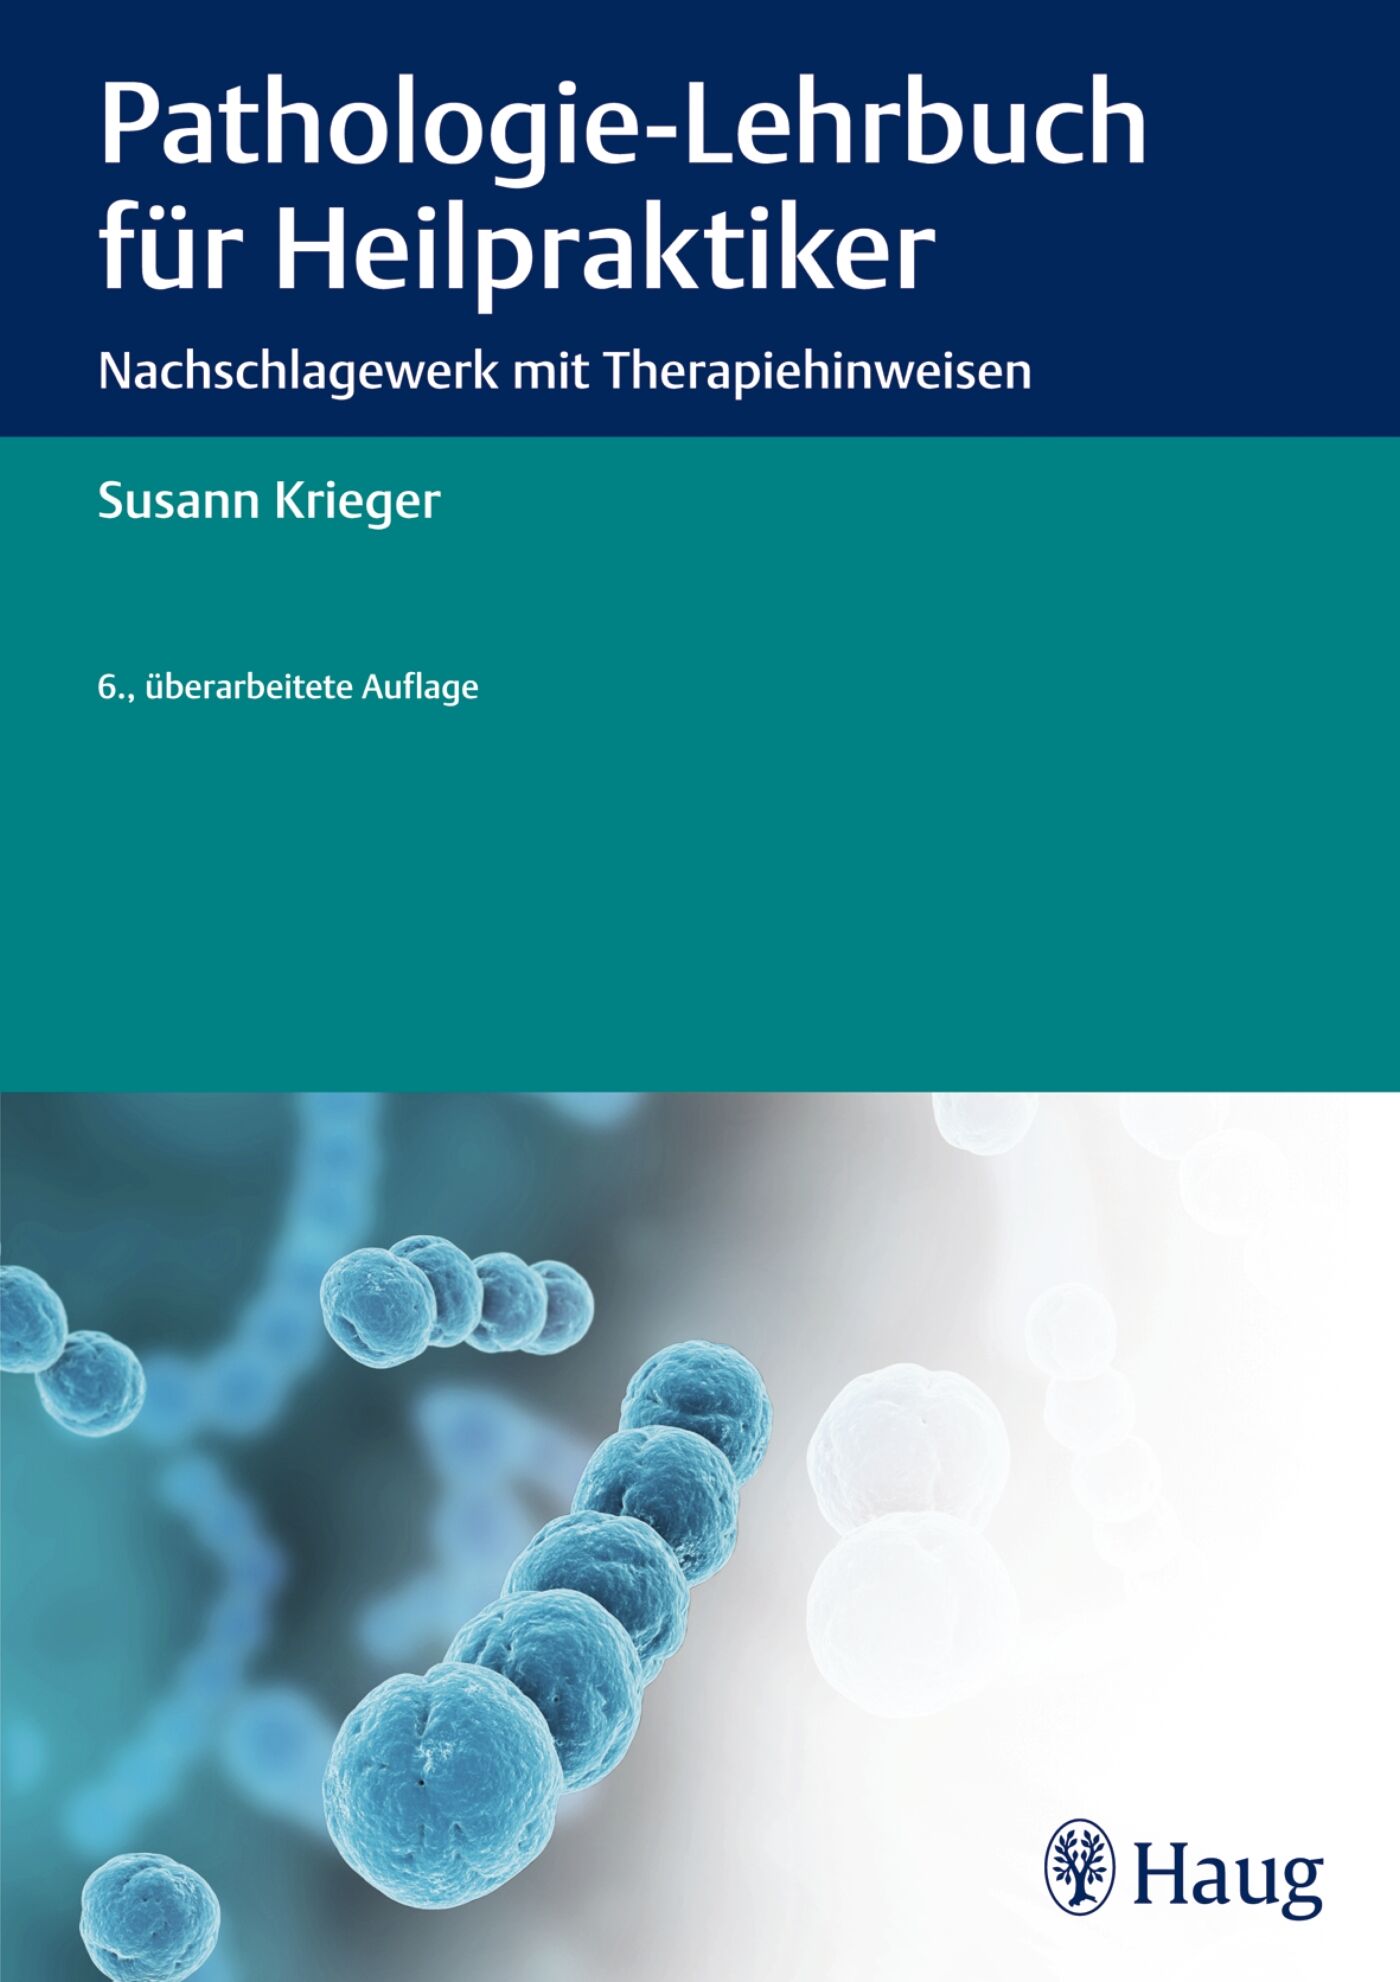 Pathologie-Lehrbuch für Heilpraktiker, 9783830478027